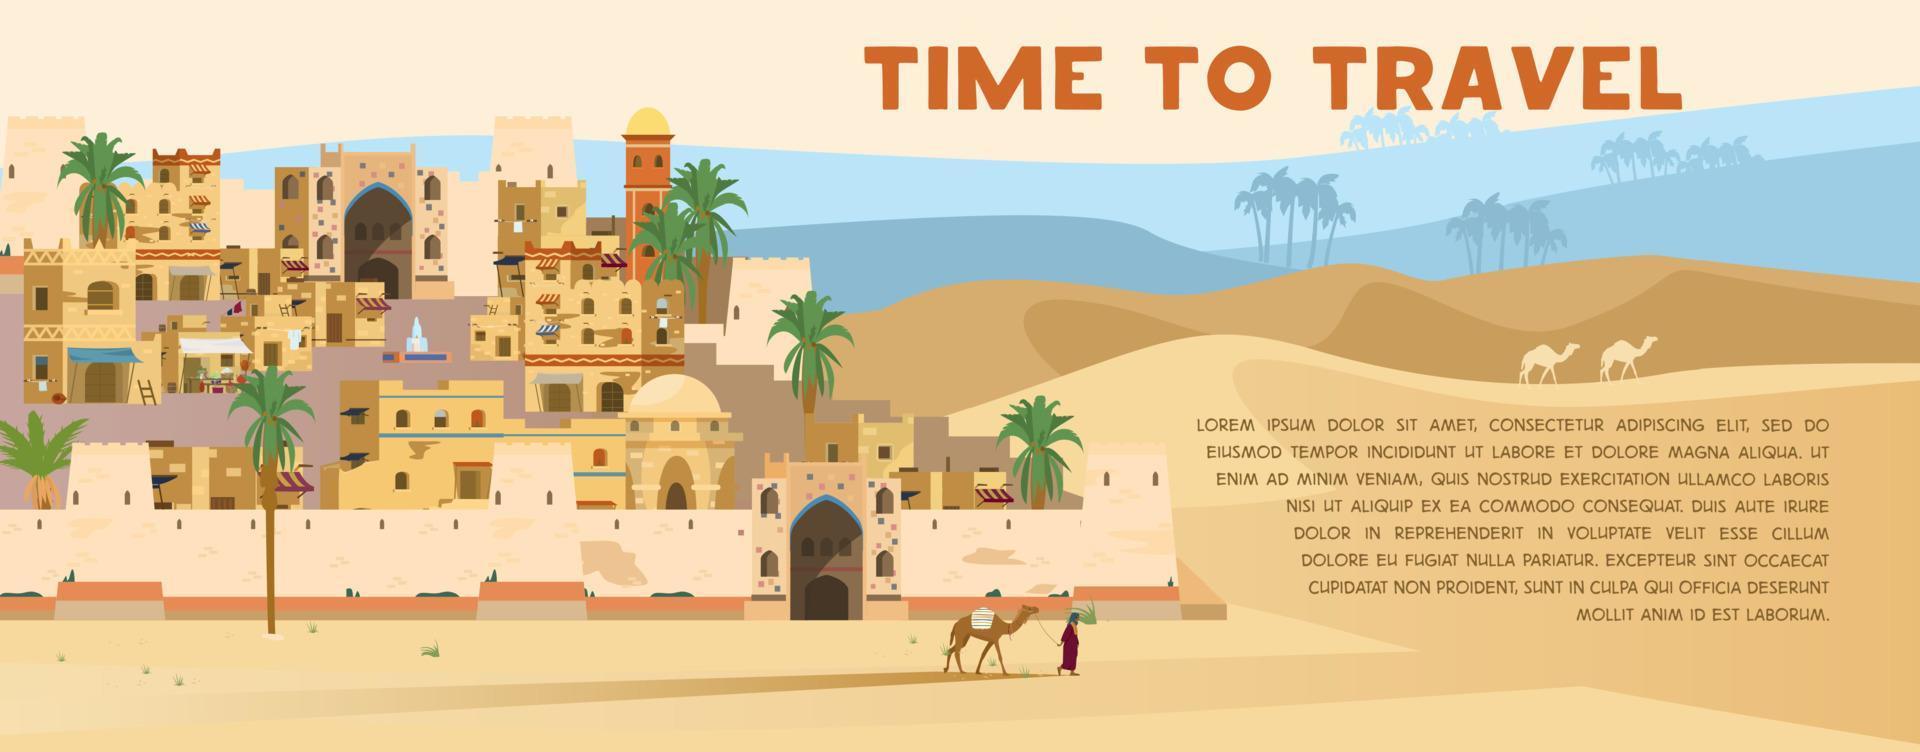 hora de viajar banner vectorial con ilustración de la antigua ciudad árabe en el paisaje desértico con casas tradicionales de ladrillos de barro, palmeras, beduinos con camello. diseño plano. vector